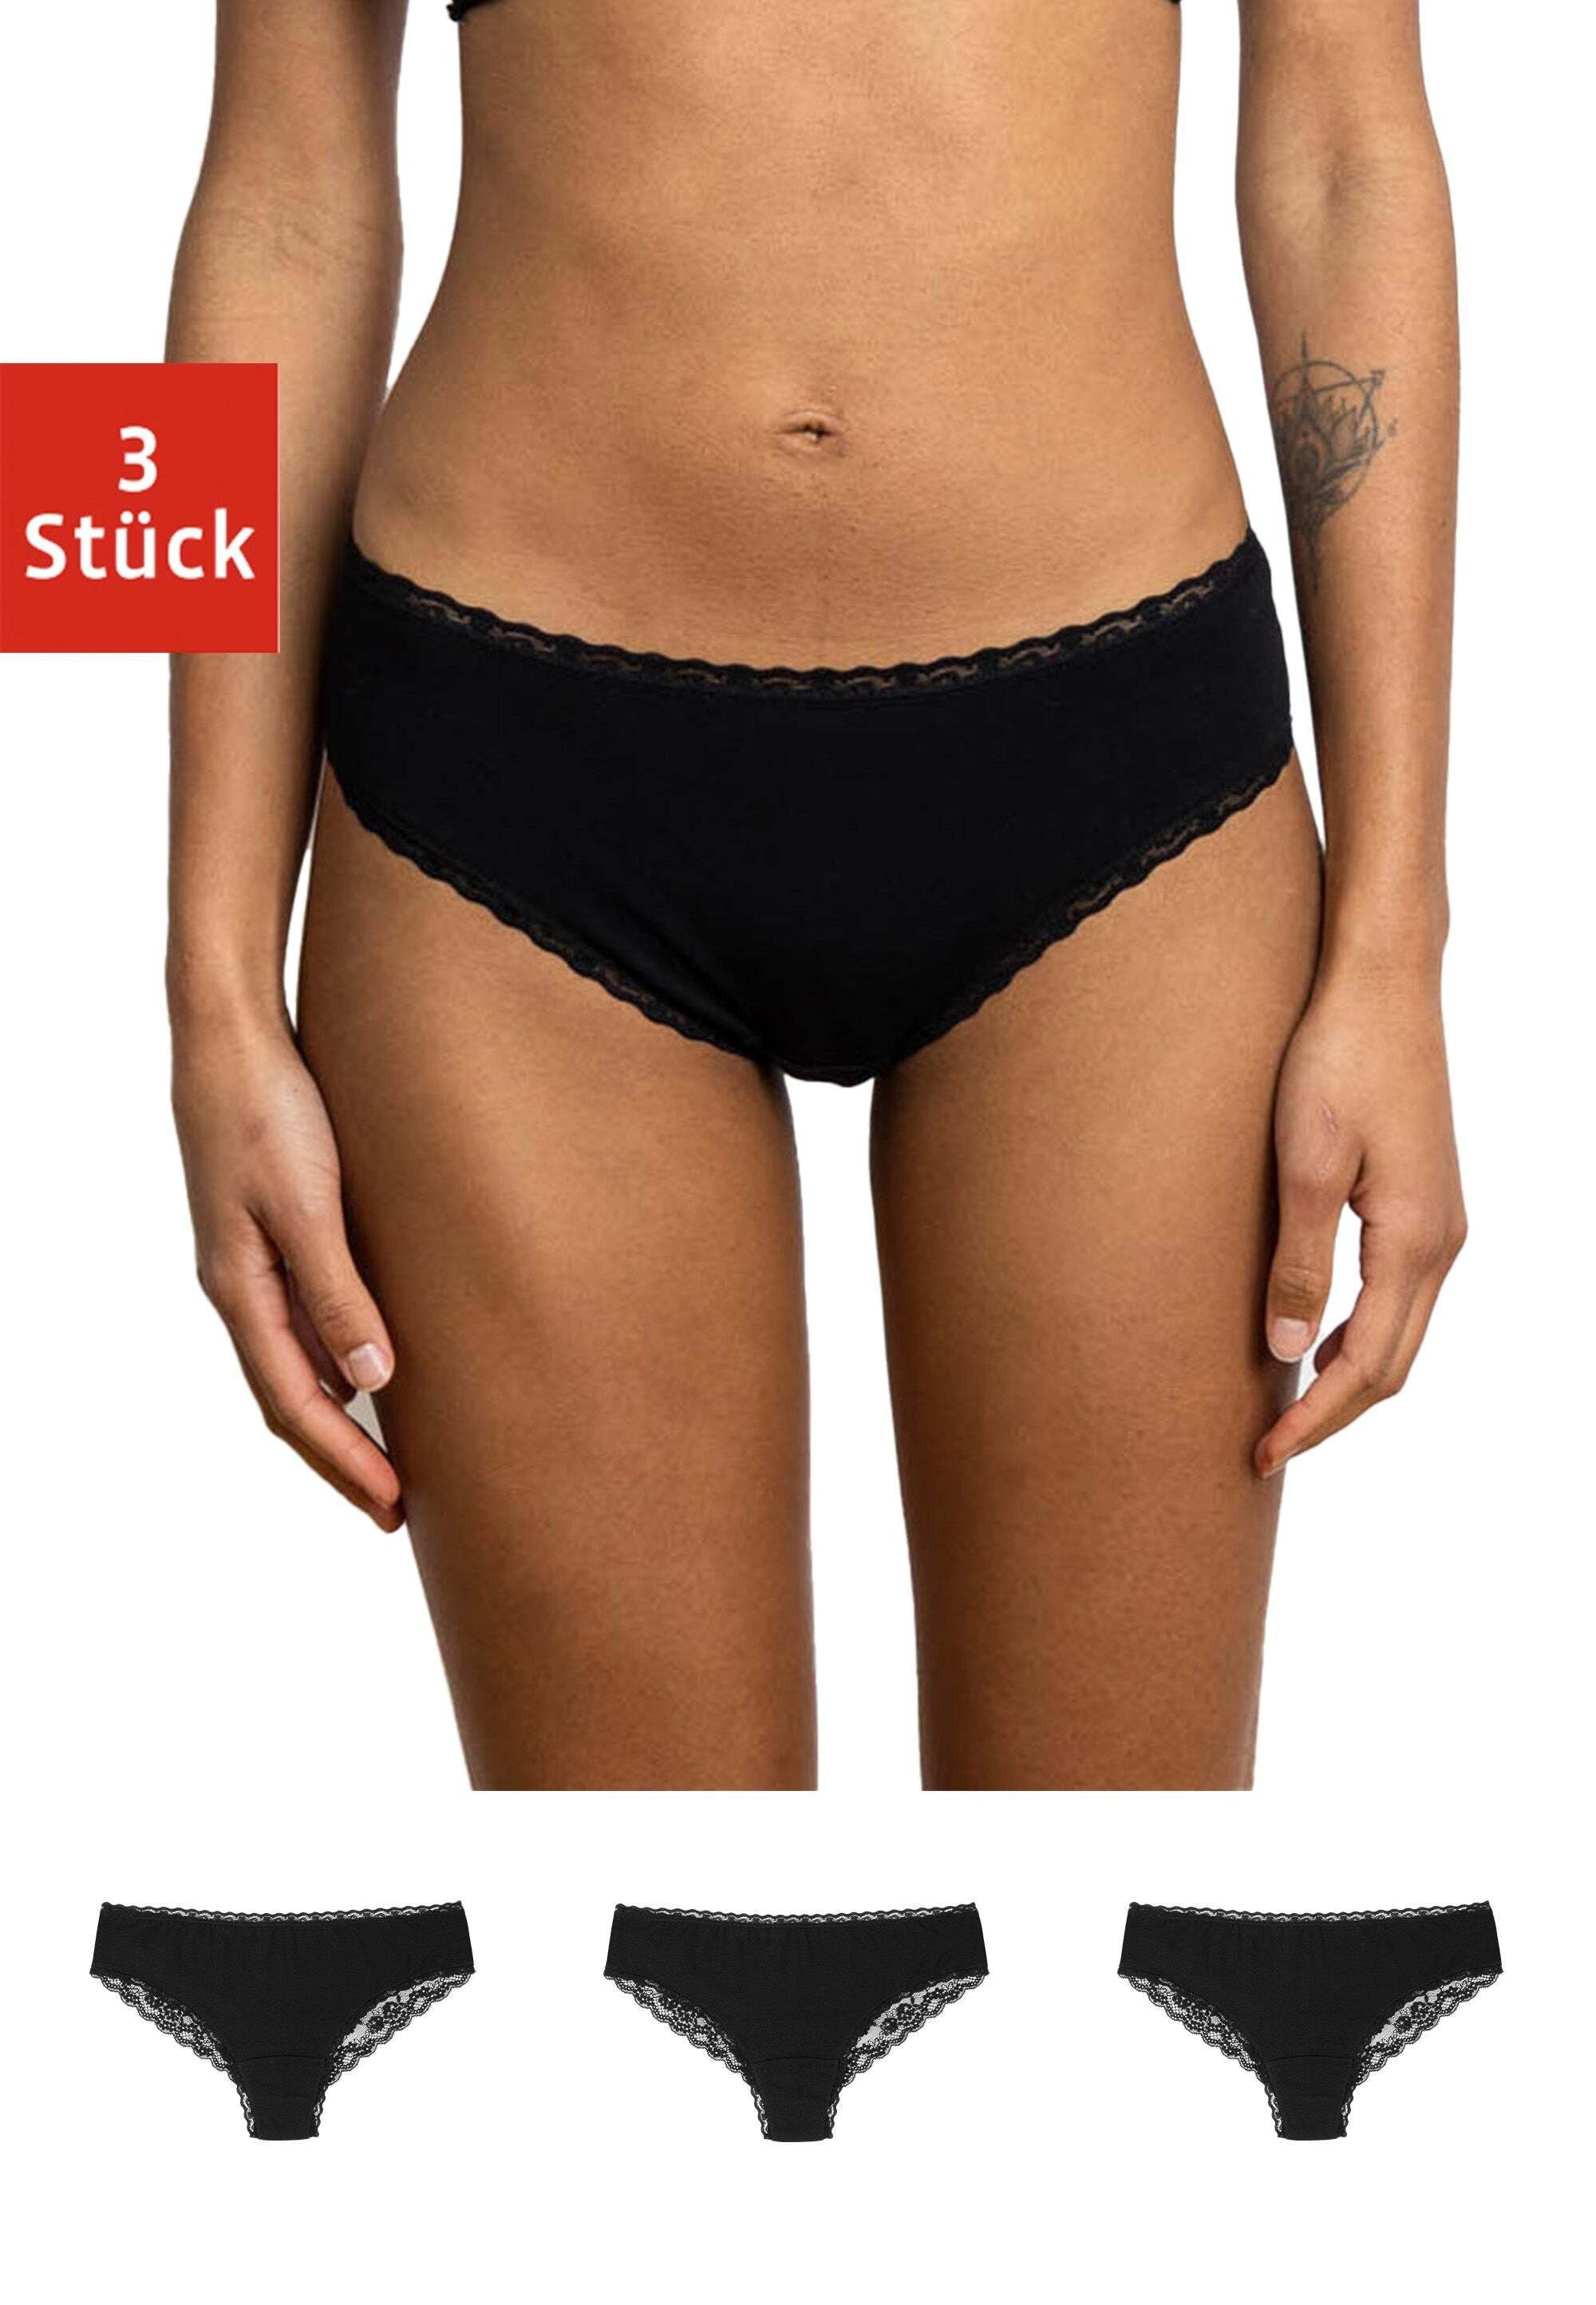 SNOCKS Brasilslip Damen Slip Unterhose (3-St) aus Bio-Baumwolle mit Spitze, bequem und elegant